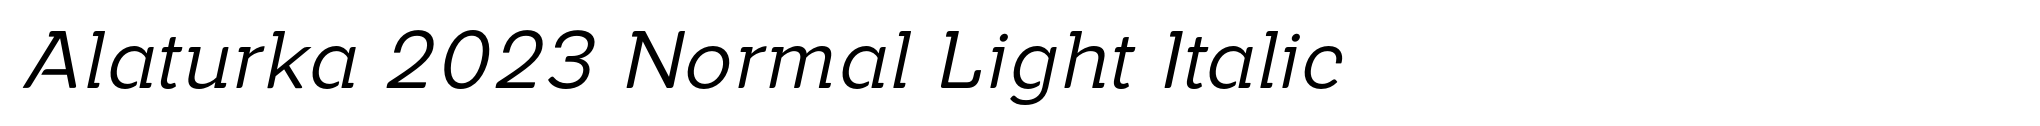 Alaturka 2023 Normal Light Italic image